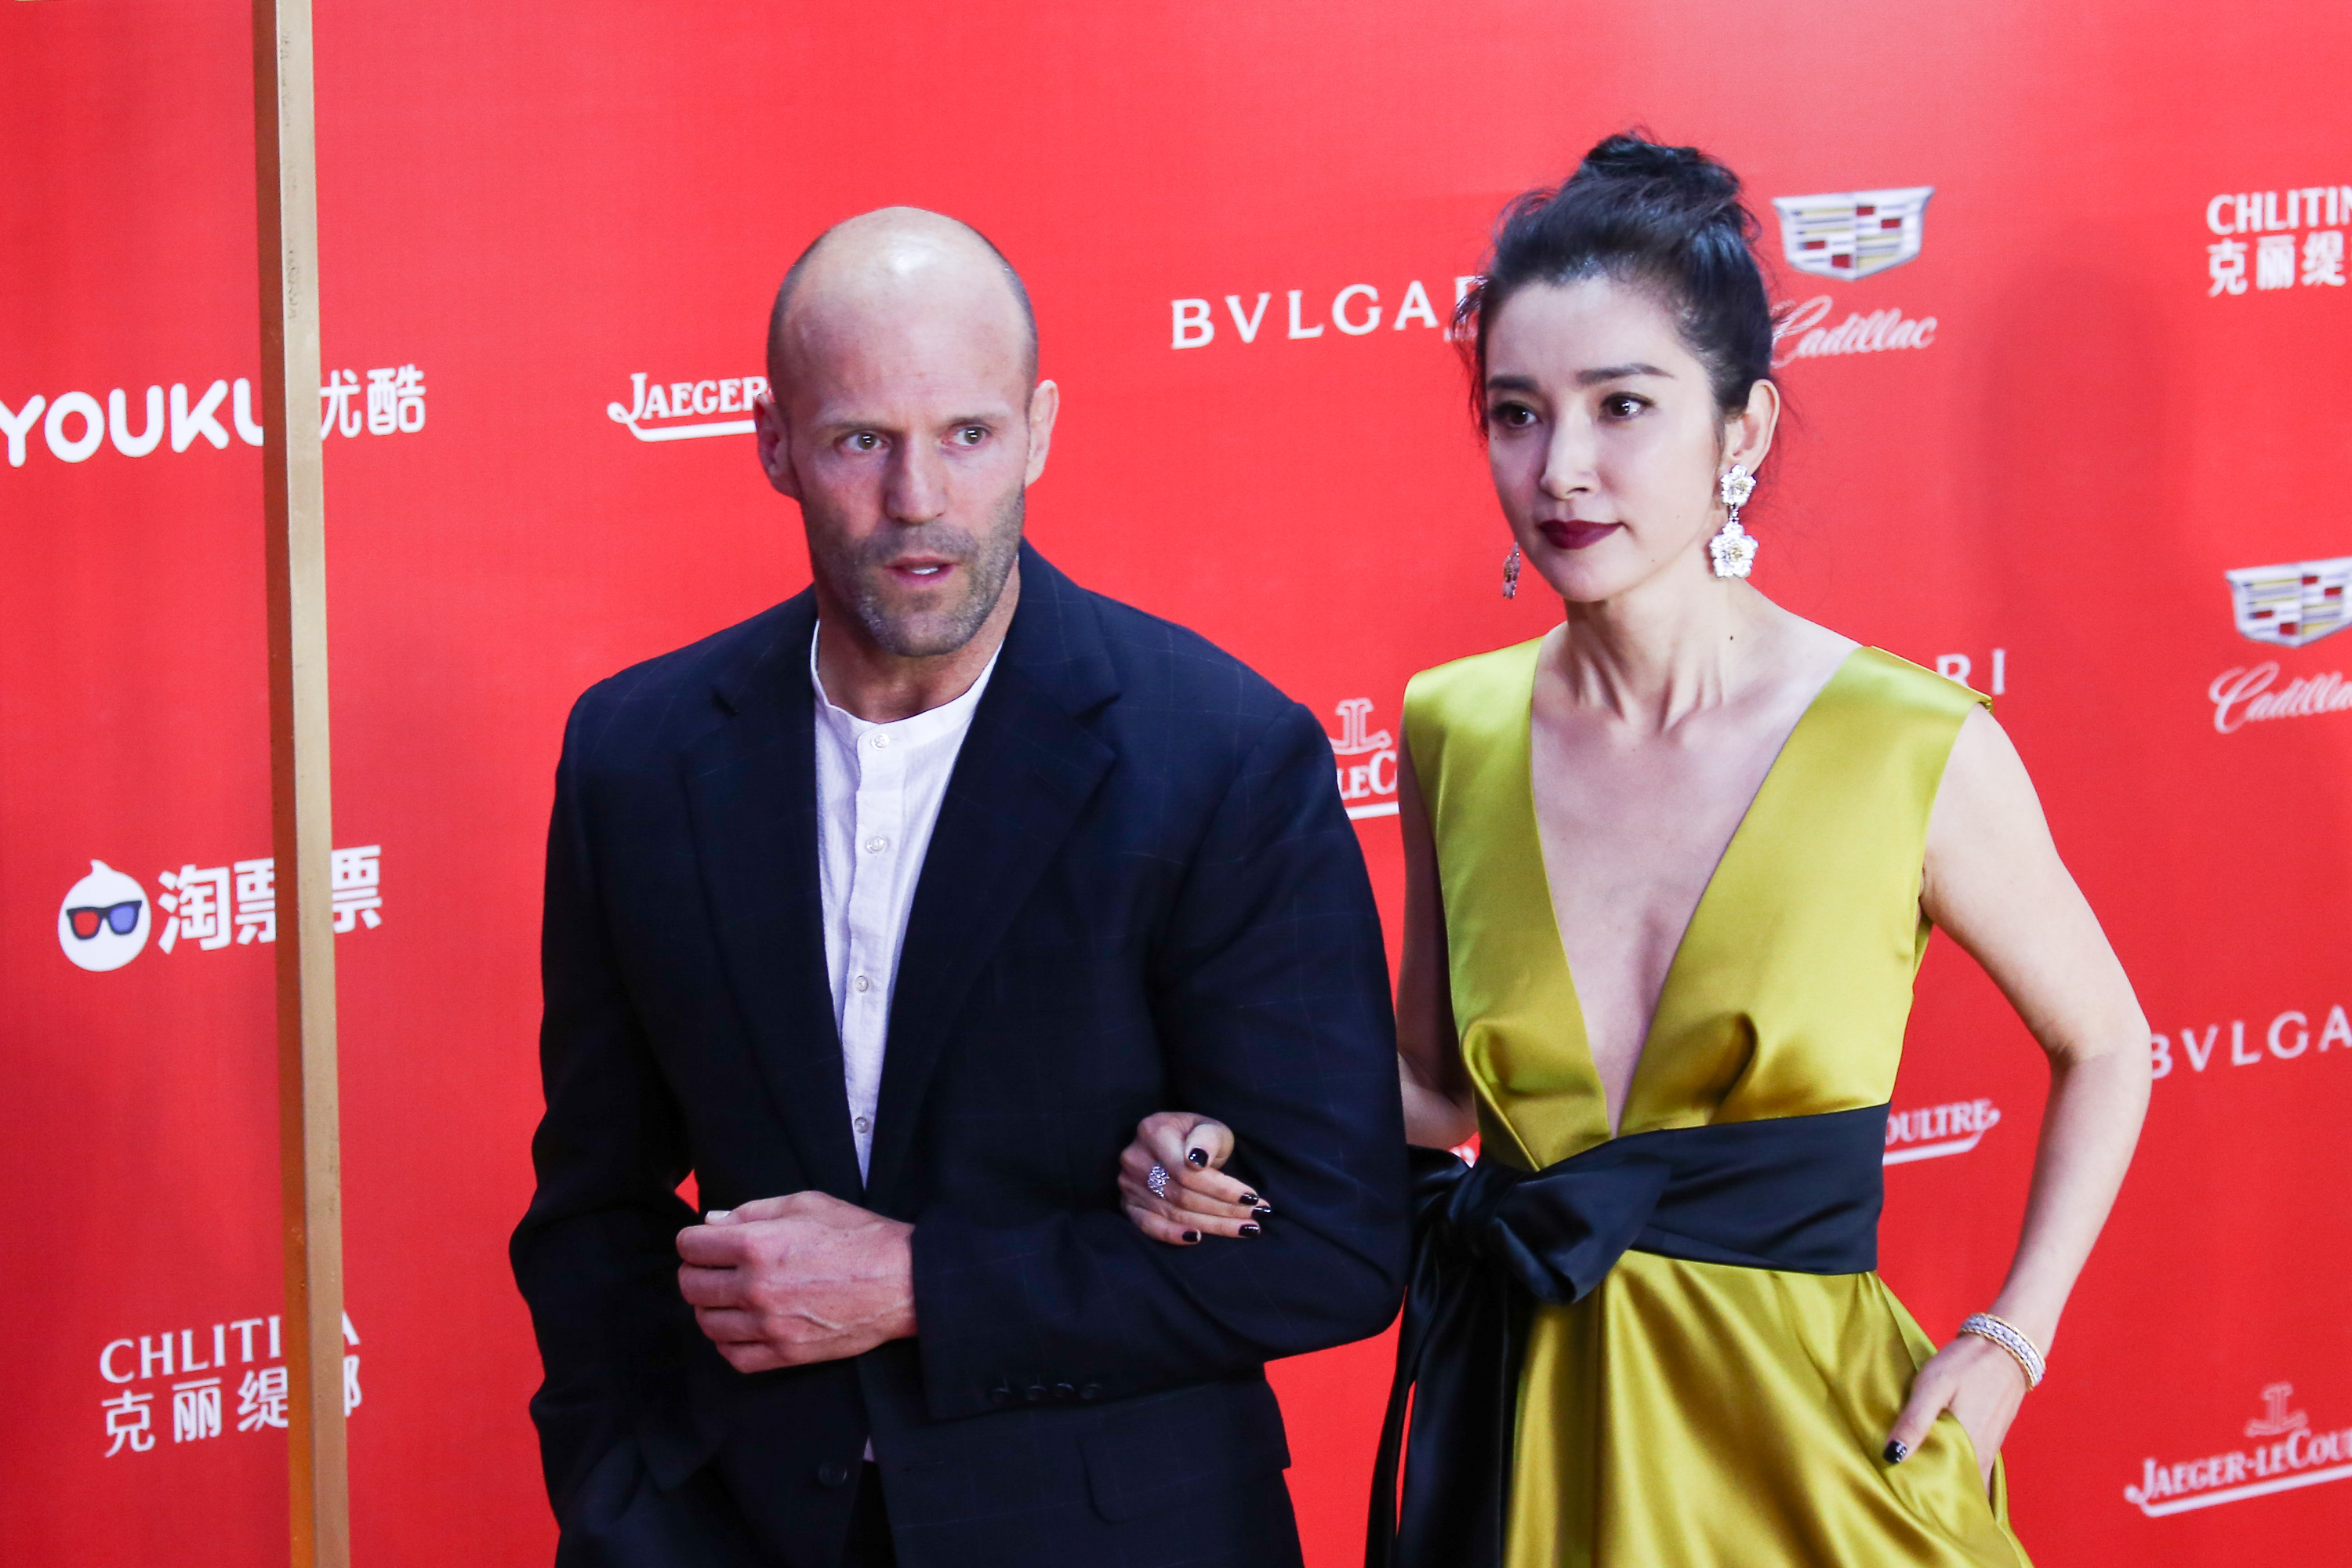 上海国际电影节杰森斯坦森携手李冰冰亮相